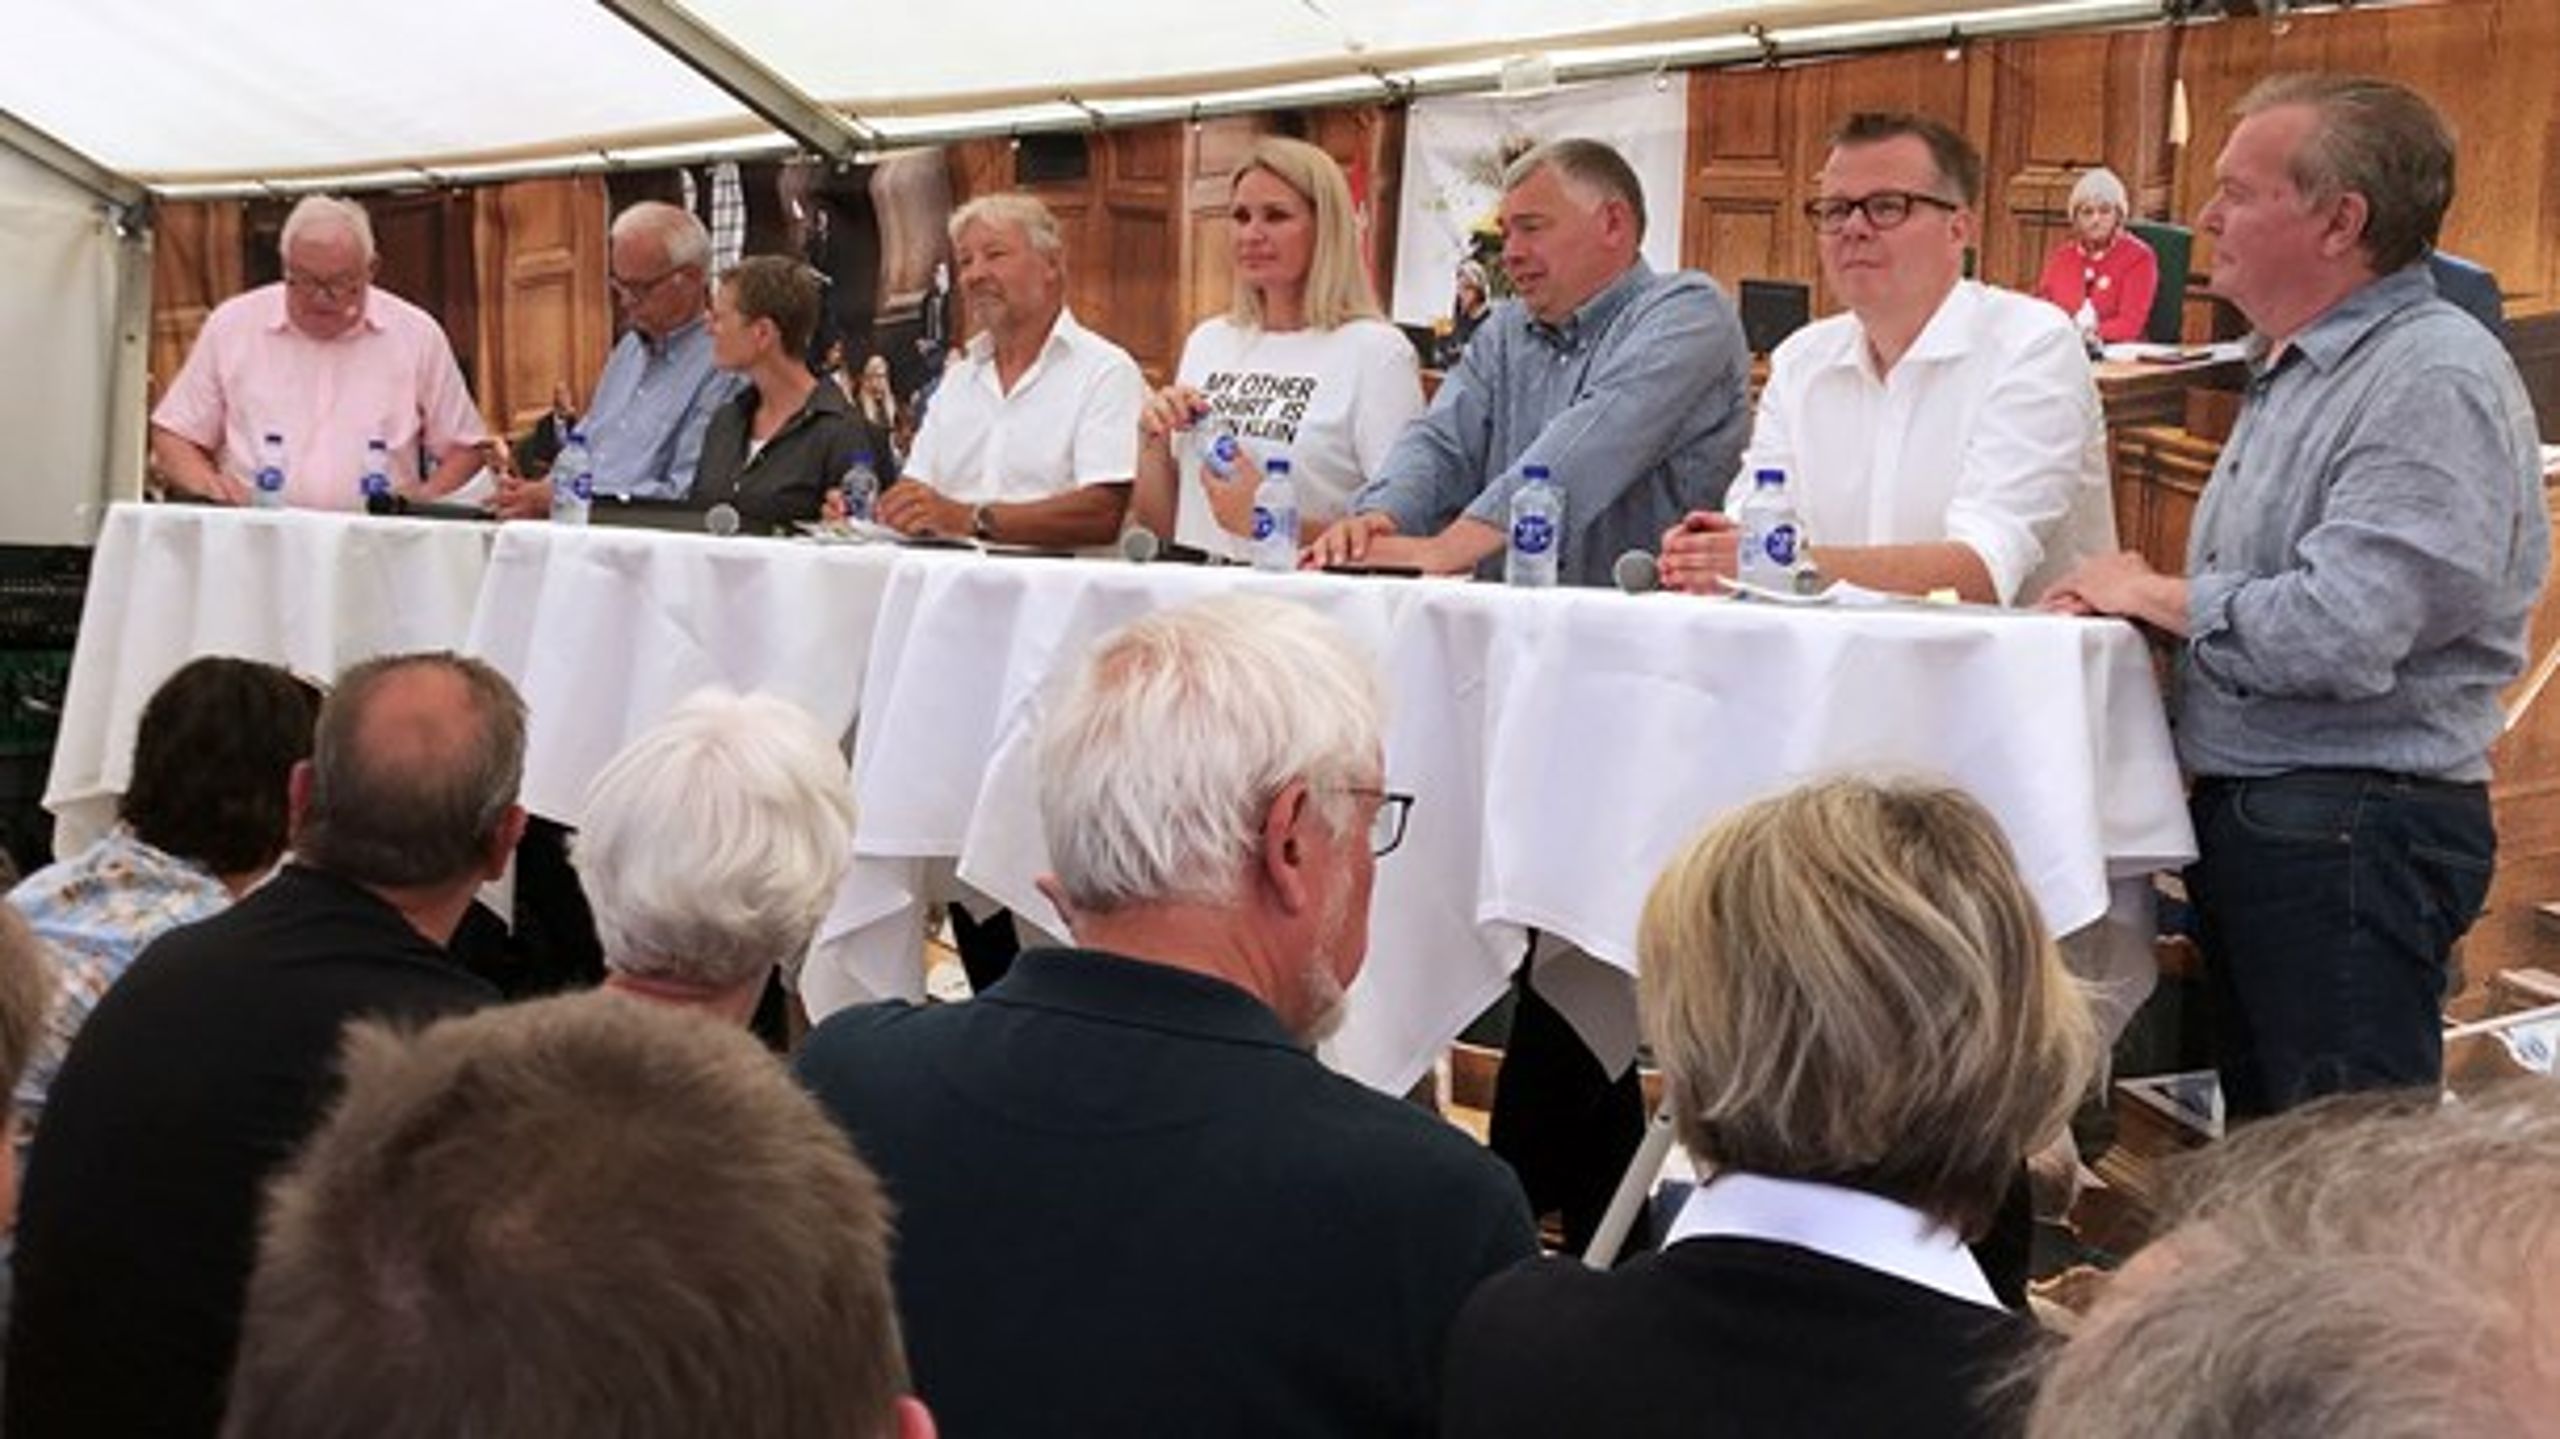 Rigs- og statsrevisorer diskuterer problemerne i Skat i Folketingets telt ved Folkemødet på Bornholm.